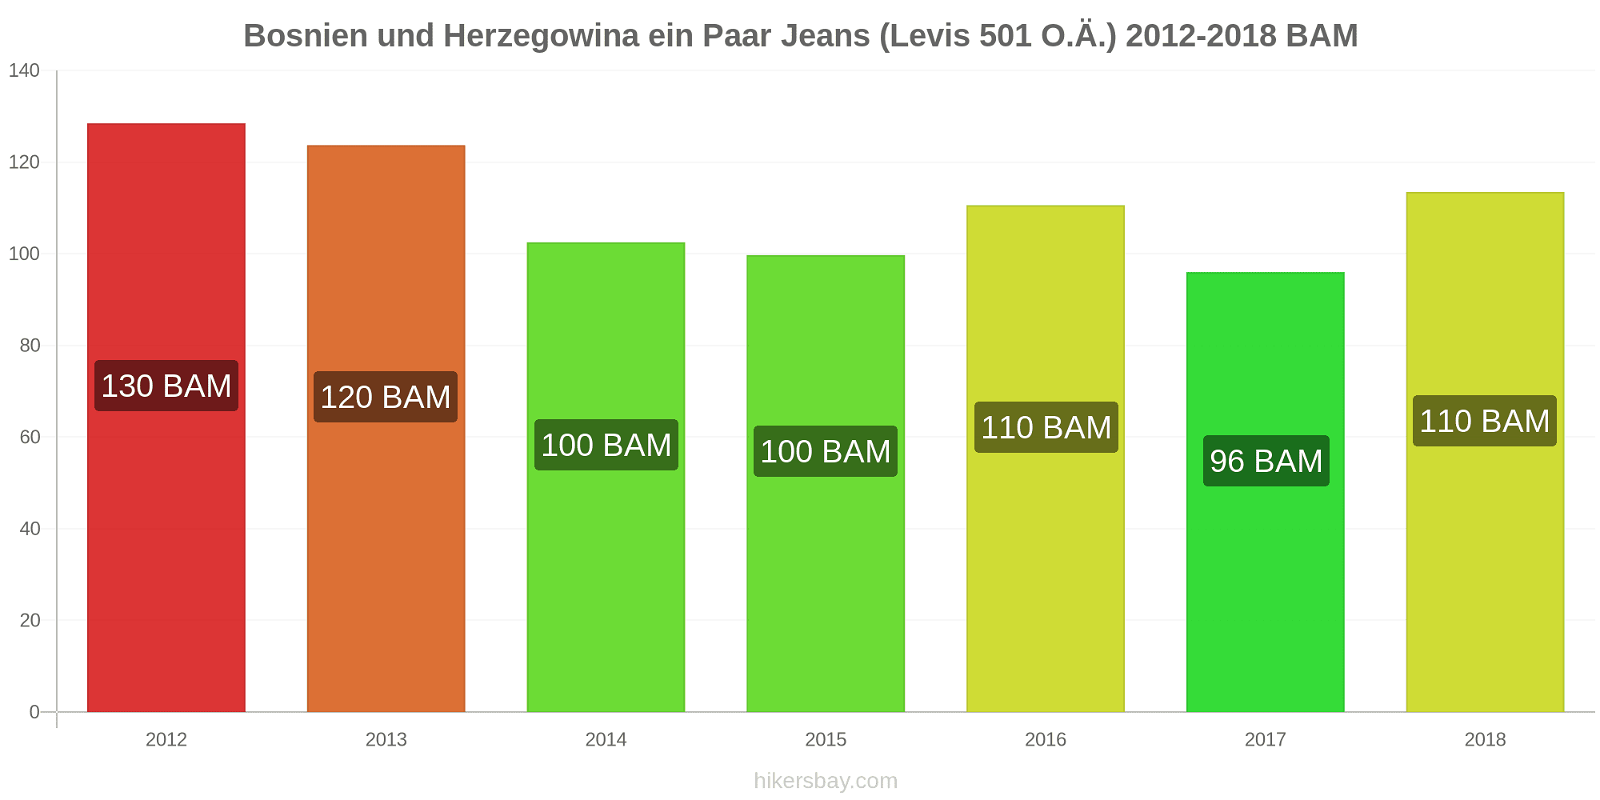 Bosnien und Herzegowina Preisänderungen 1 Paar Jeans (Levis 501 oder ähnlich) hikersbay.com